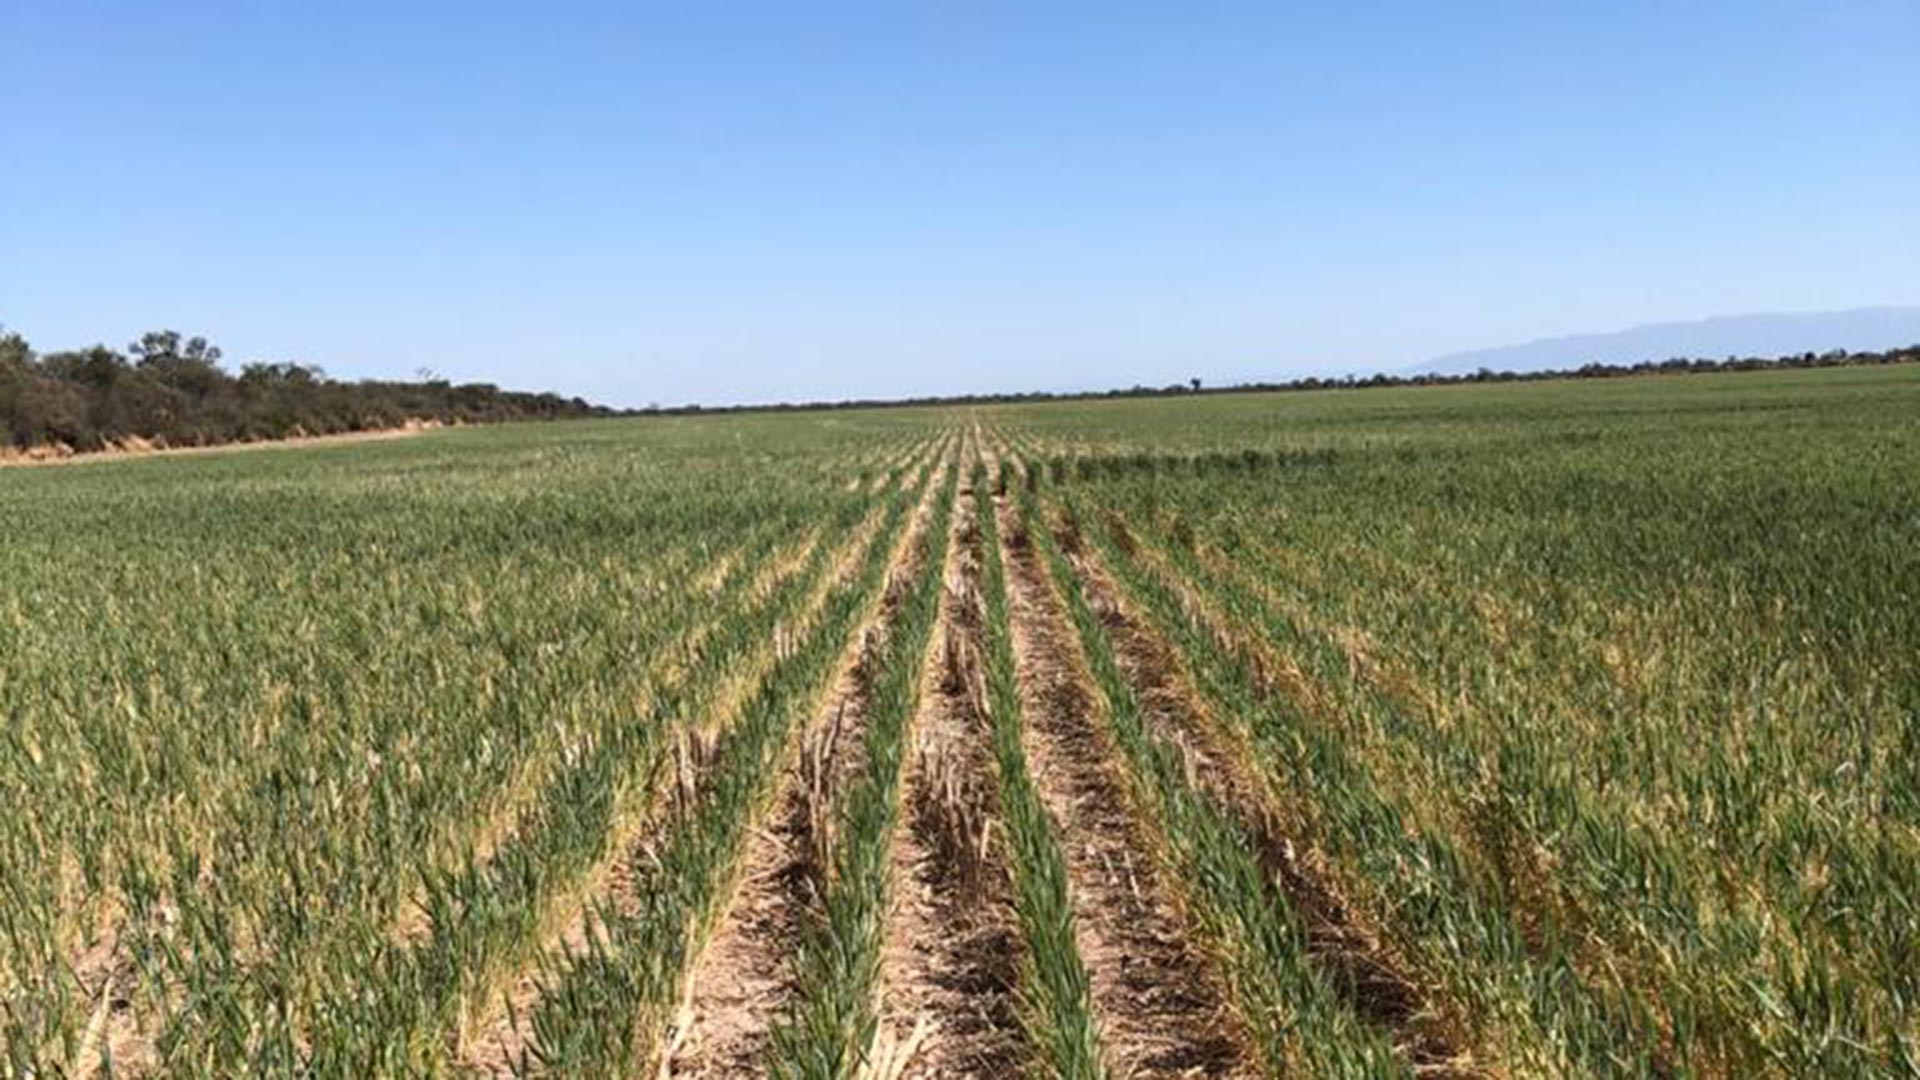 Los productores manifestaron su preocupación por la falta de precipitaciones que complica especialmente al trigo